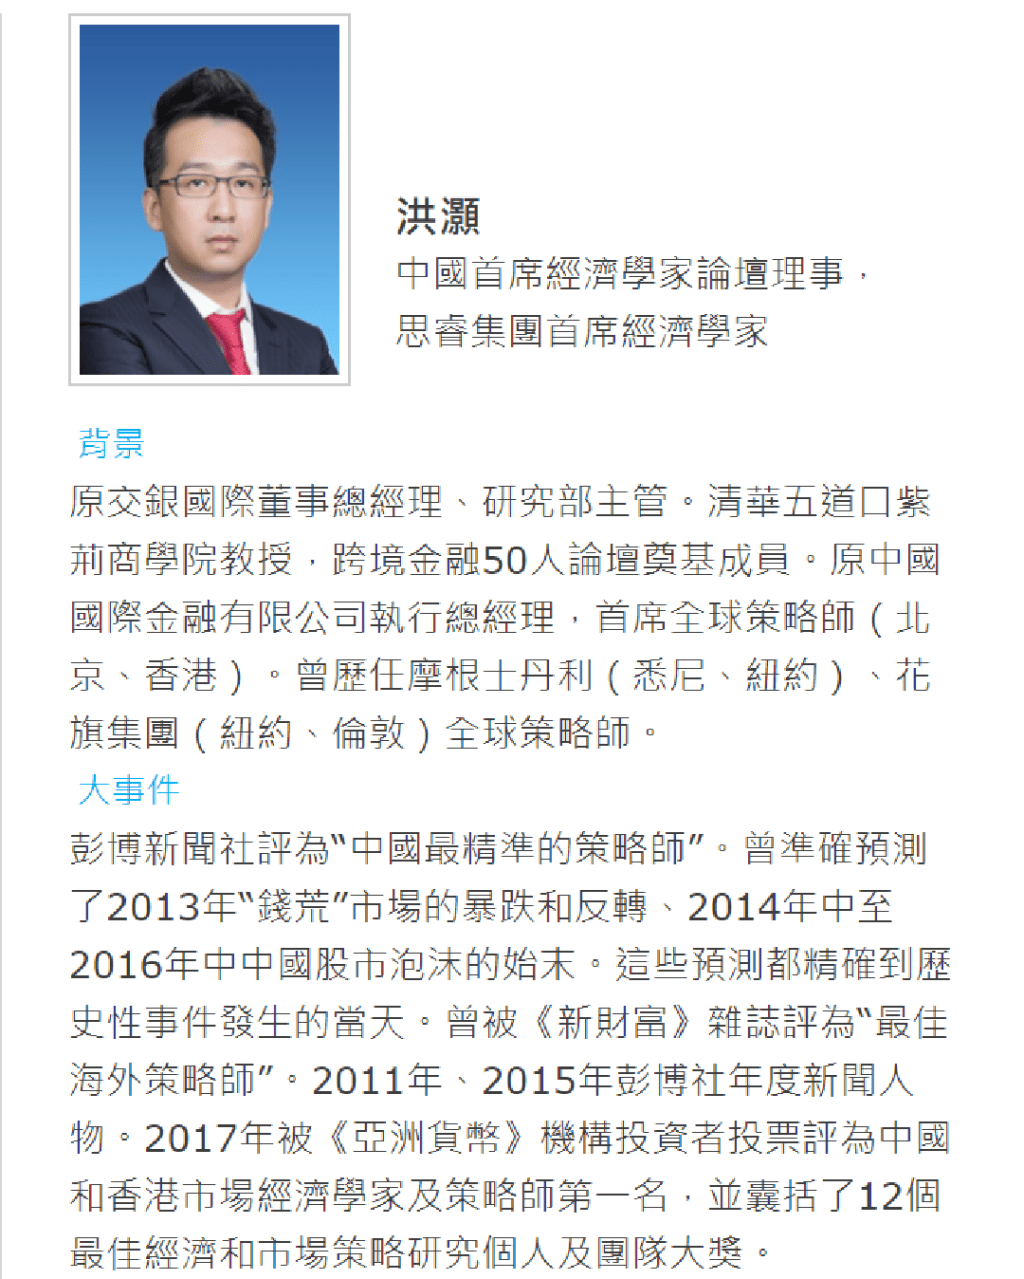 他指中国首席经济学家论坛理事，个人介绍提及多次战绩。